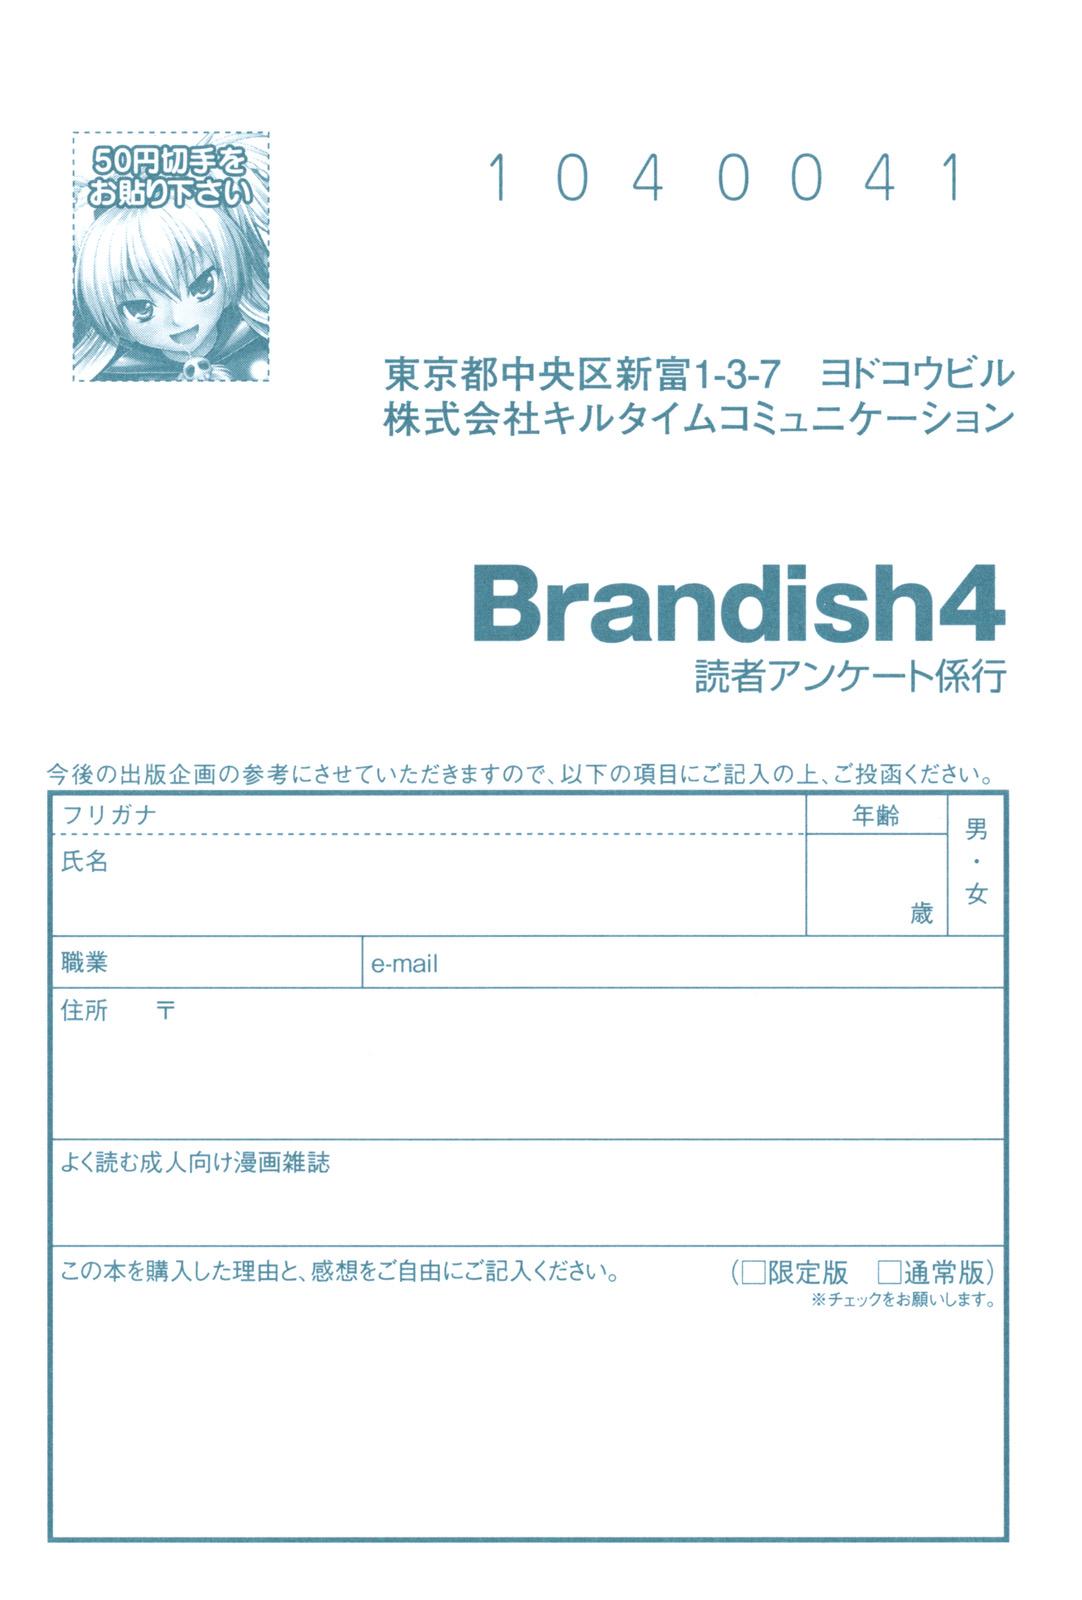 Brandish 4 185